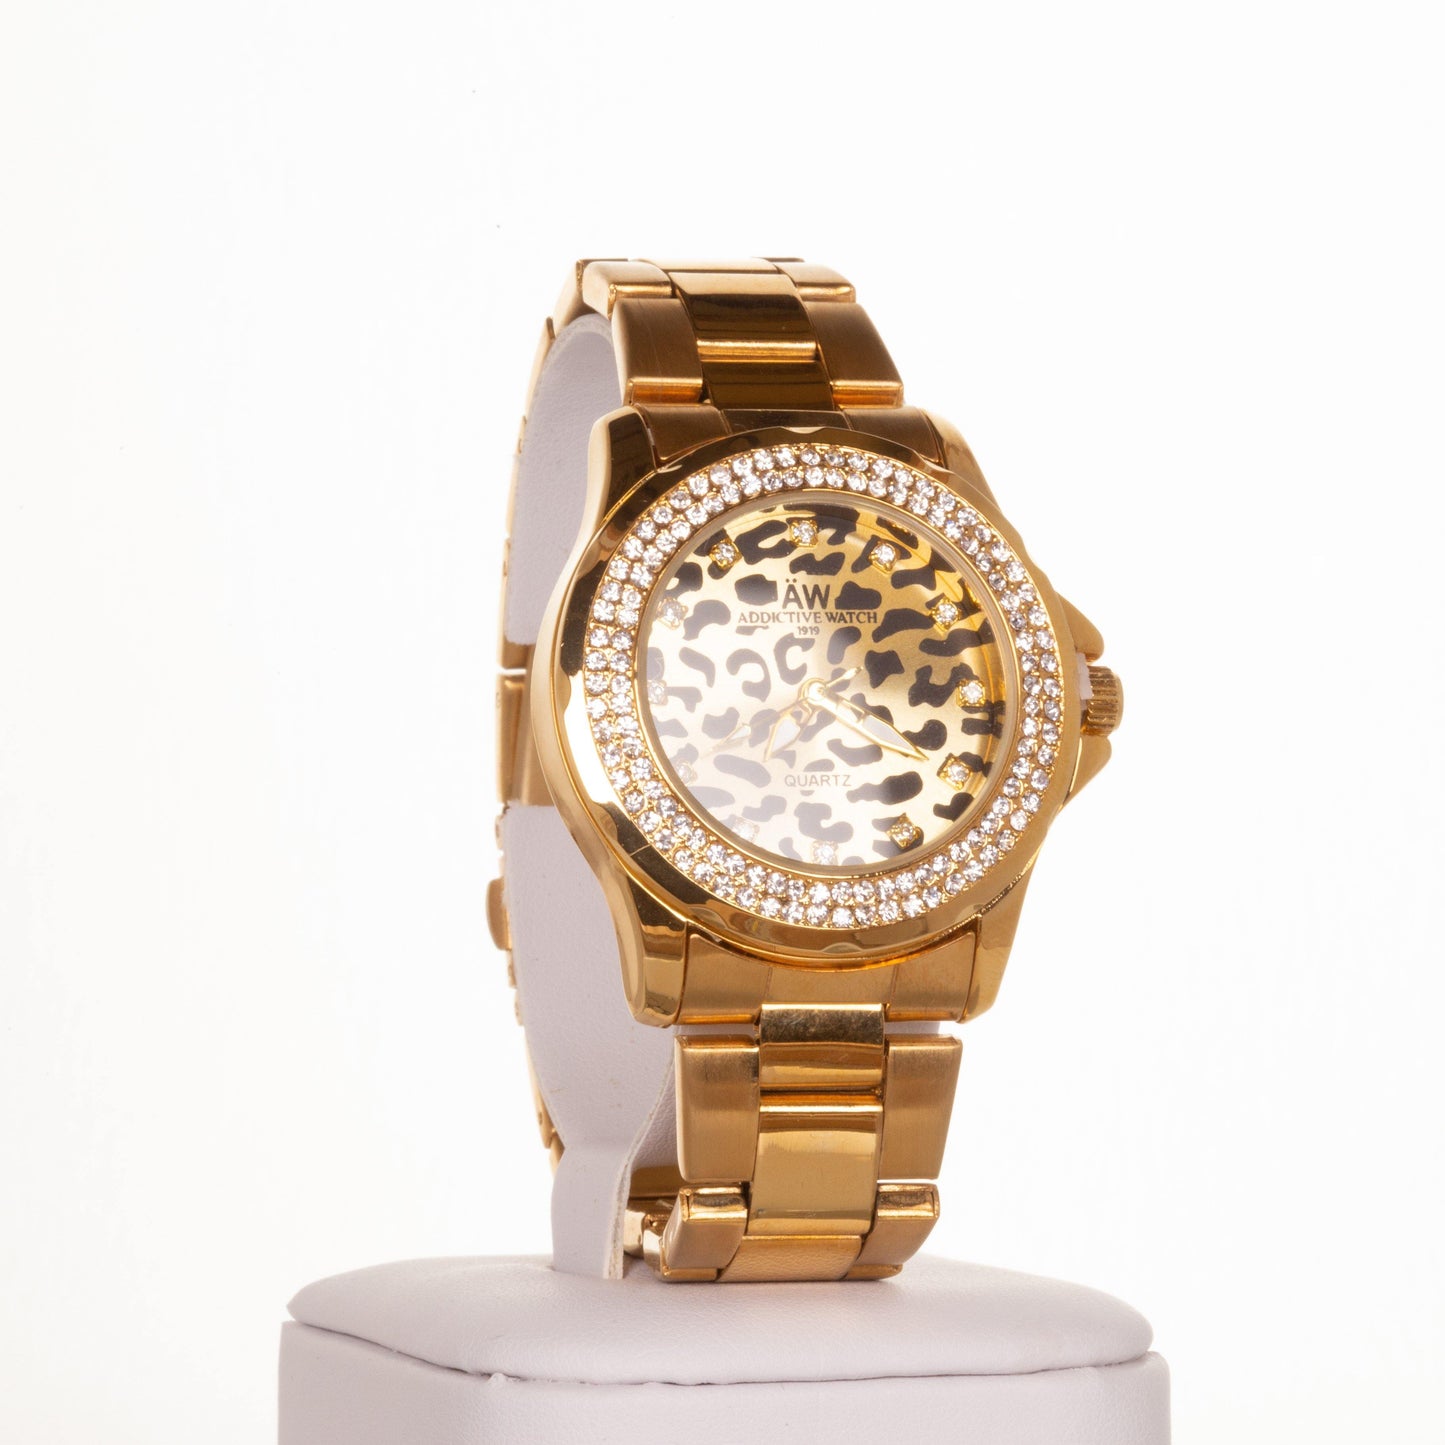 AW arany színű női óra leopárd mintás számlappal és kvrackristályokkal - Ékszer Galéria